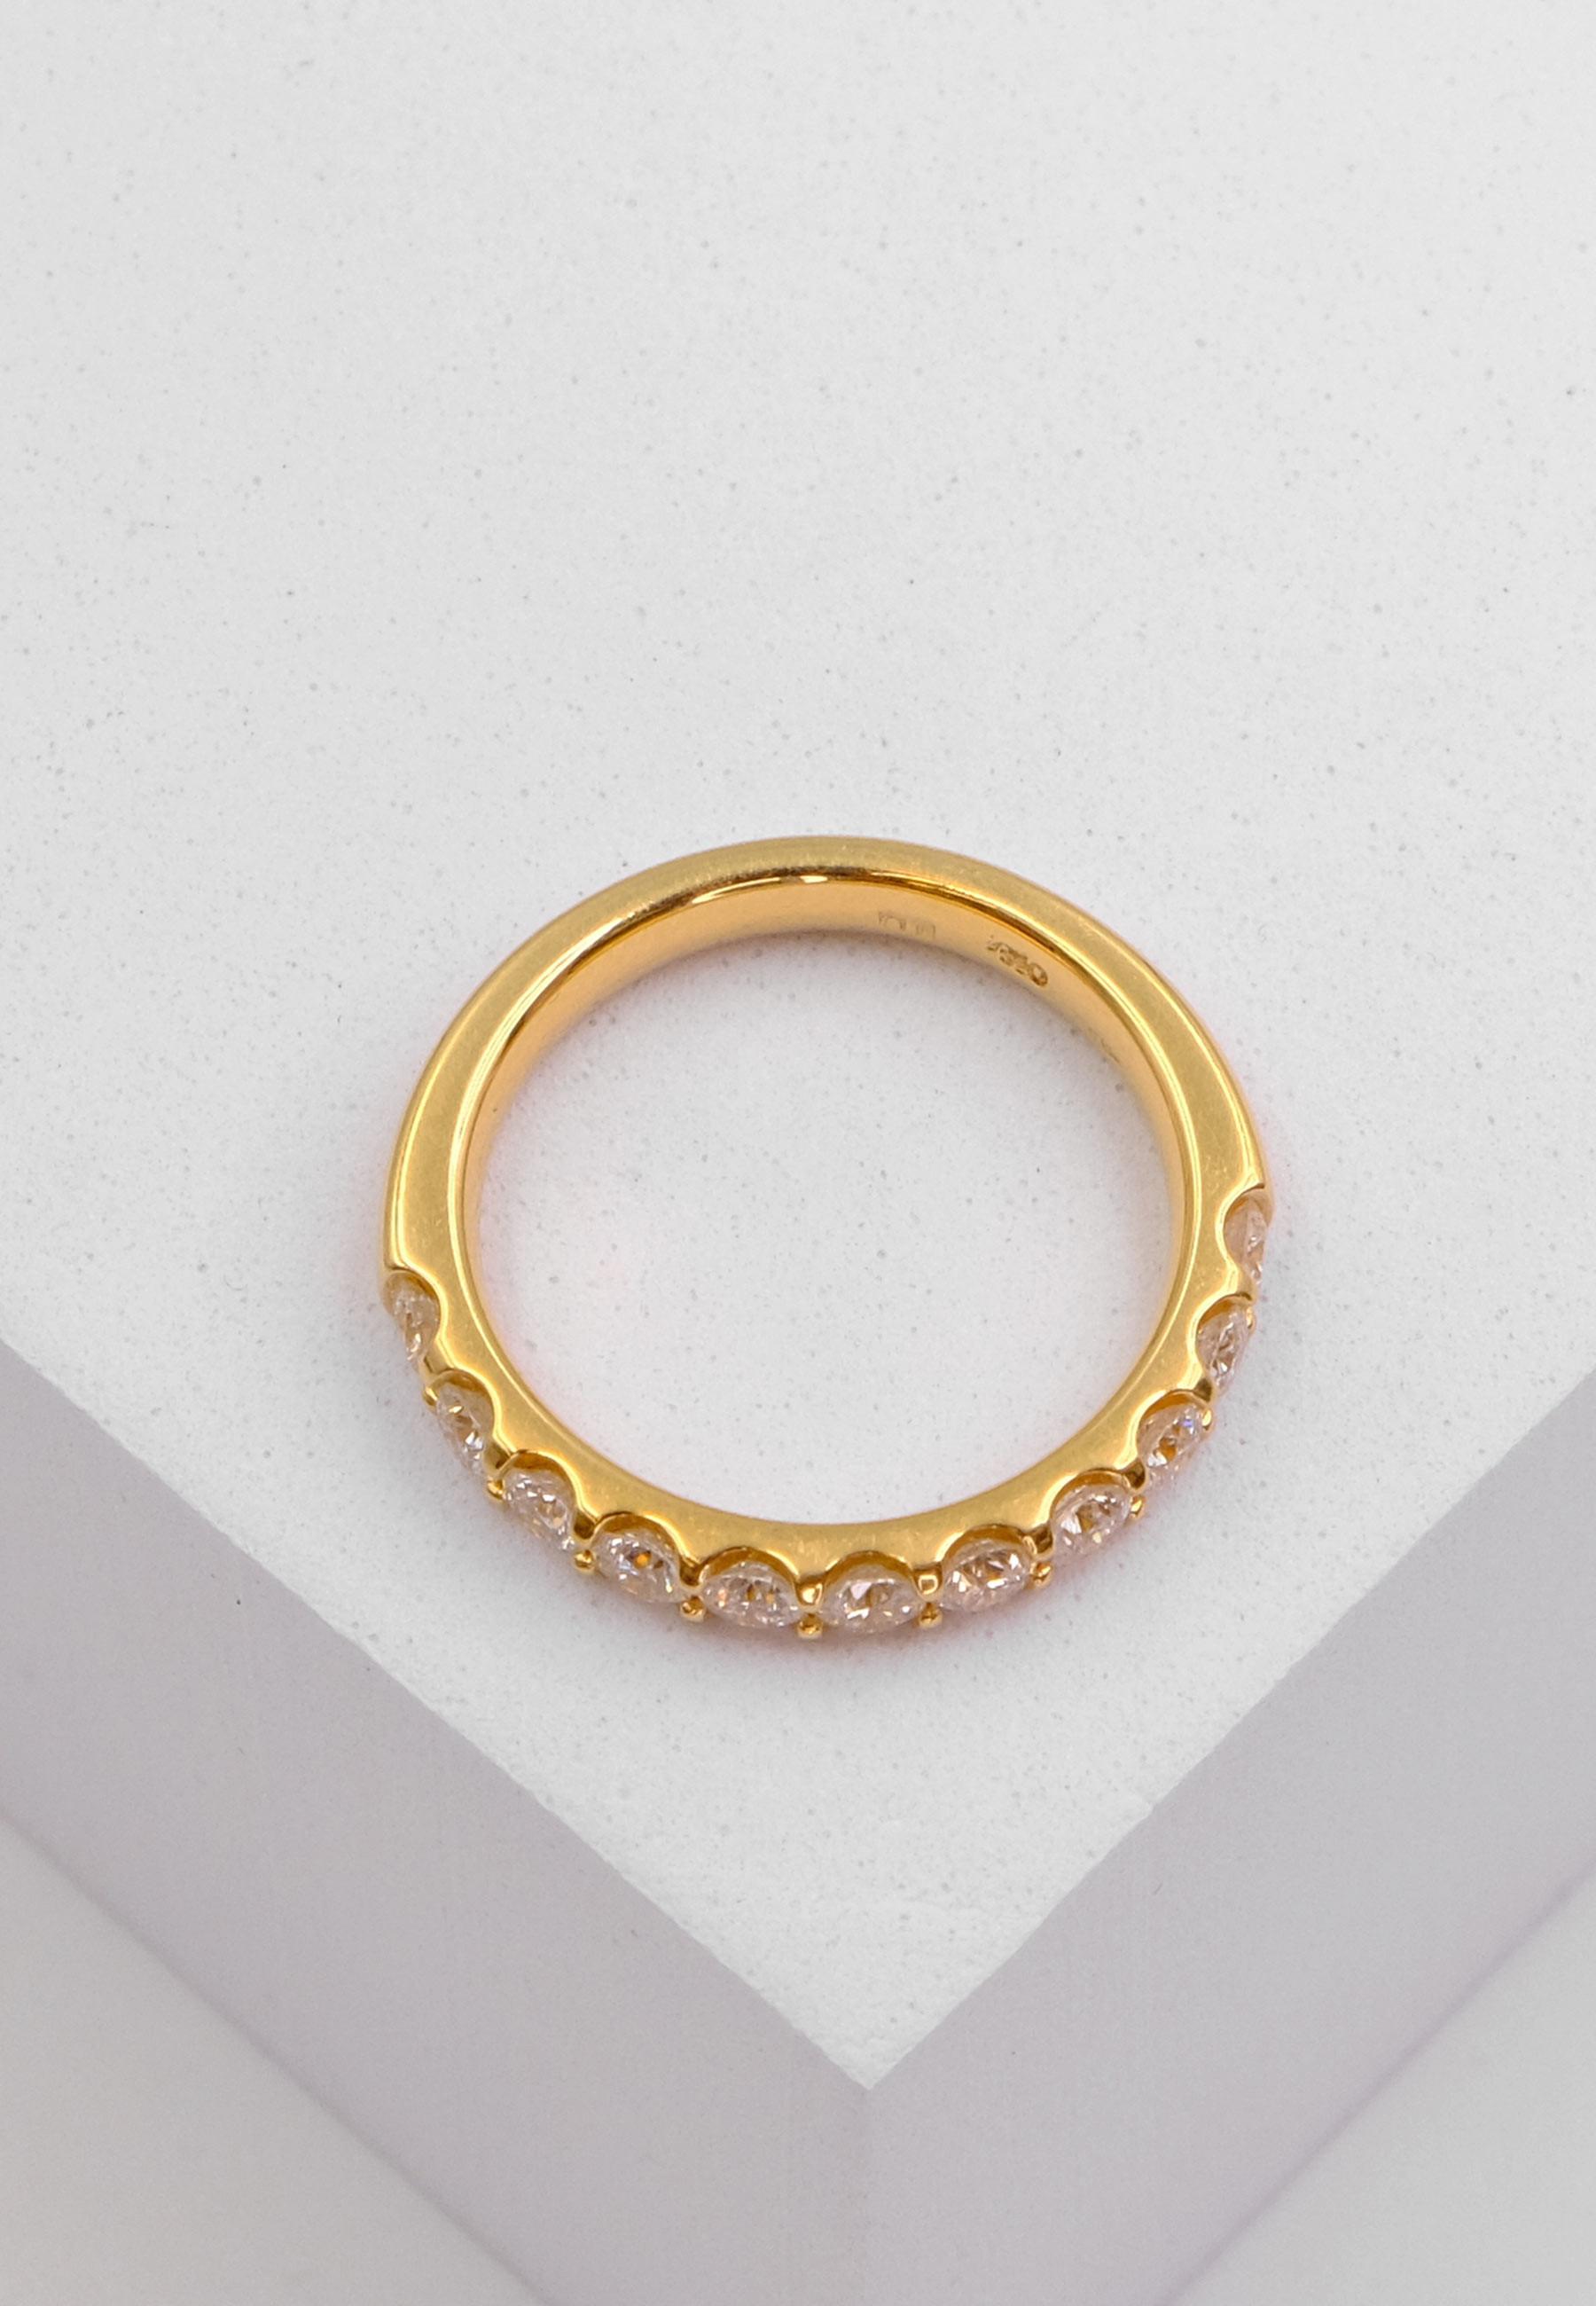 MUAU Schmuck  Ring Diamant 1.00ct. Gelbgold 750 